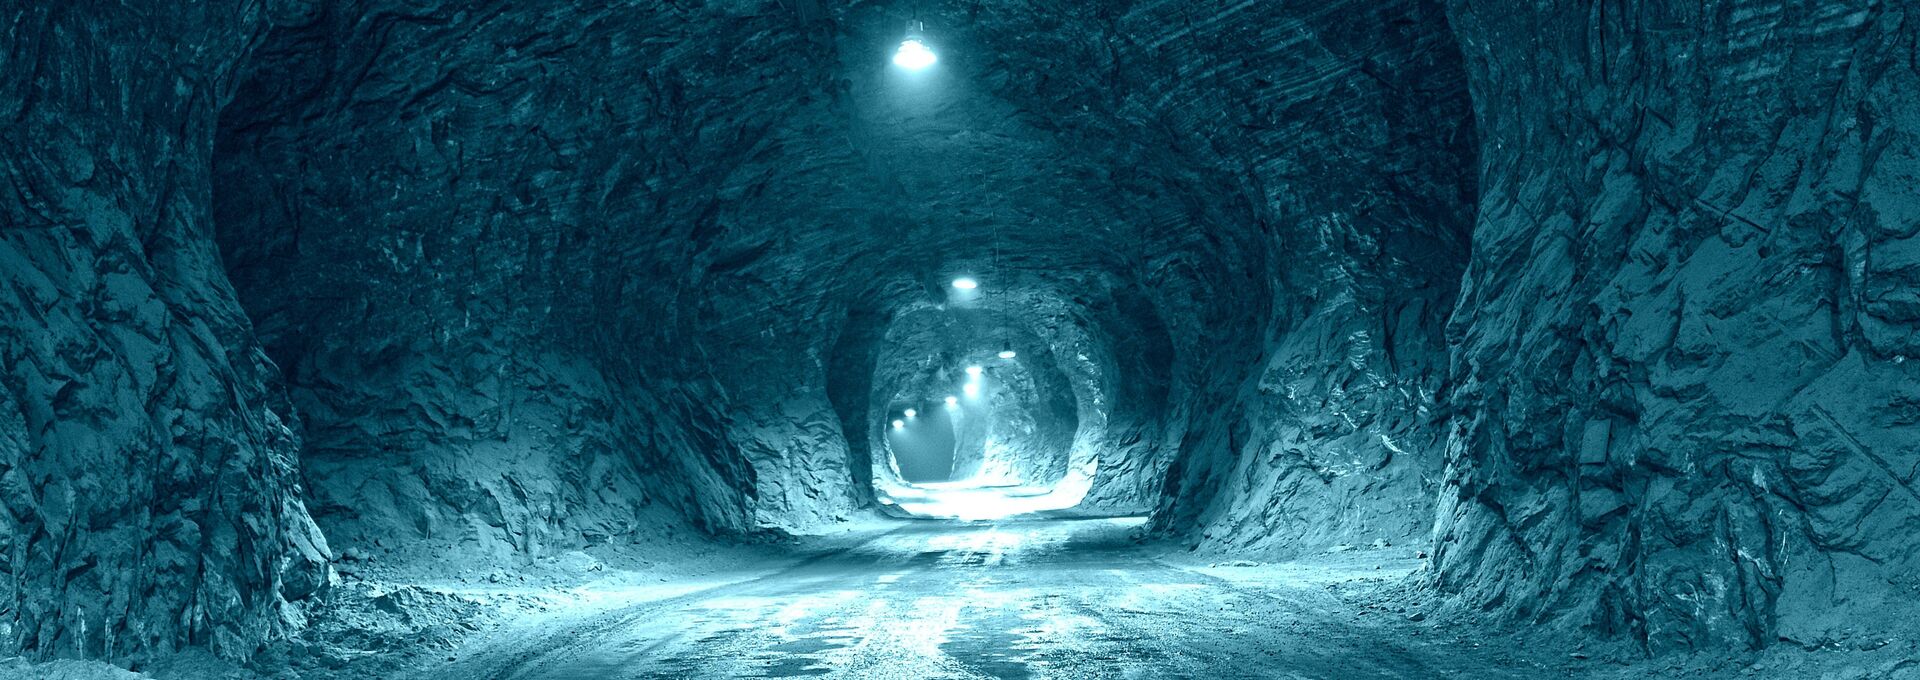 Автомобильный туннель в соляной пещере - РИА Новости, 1920, 19.11.2020